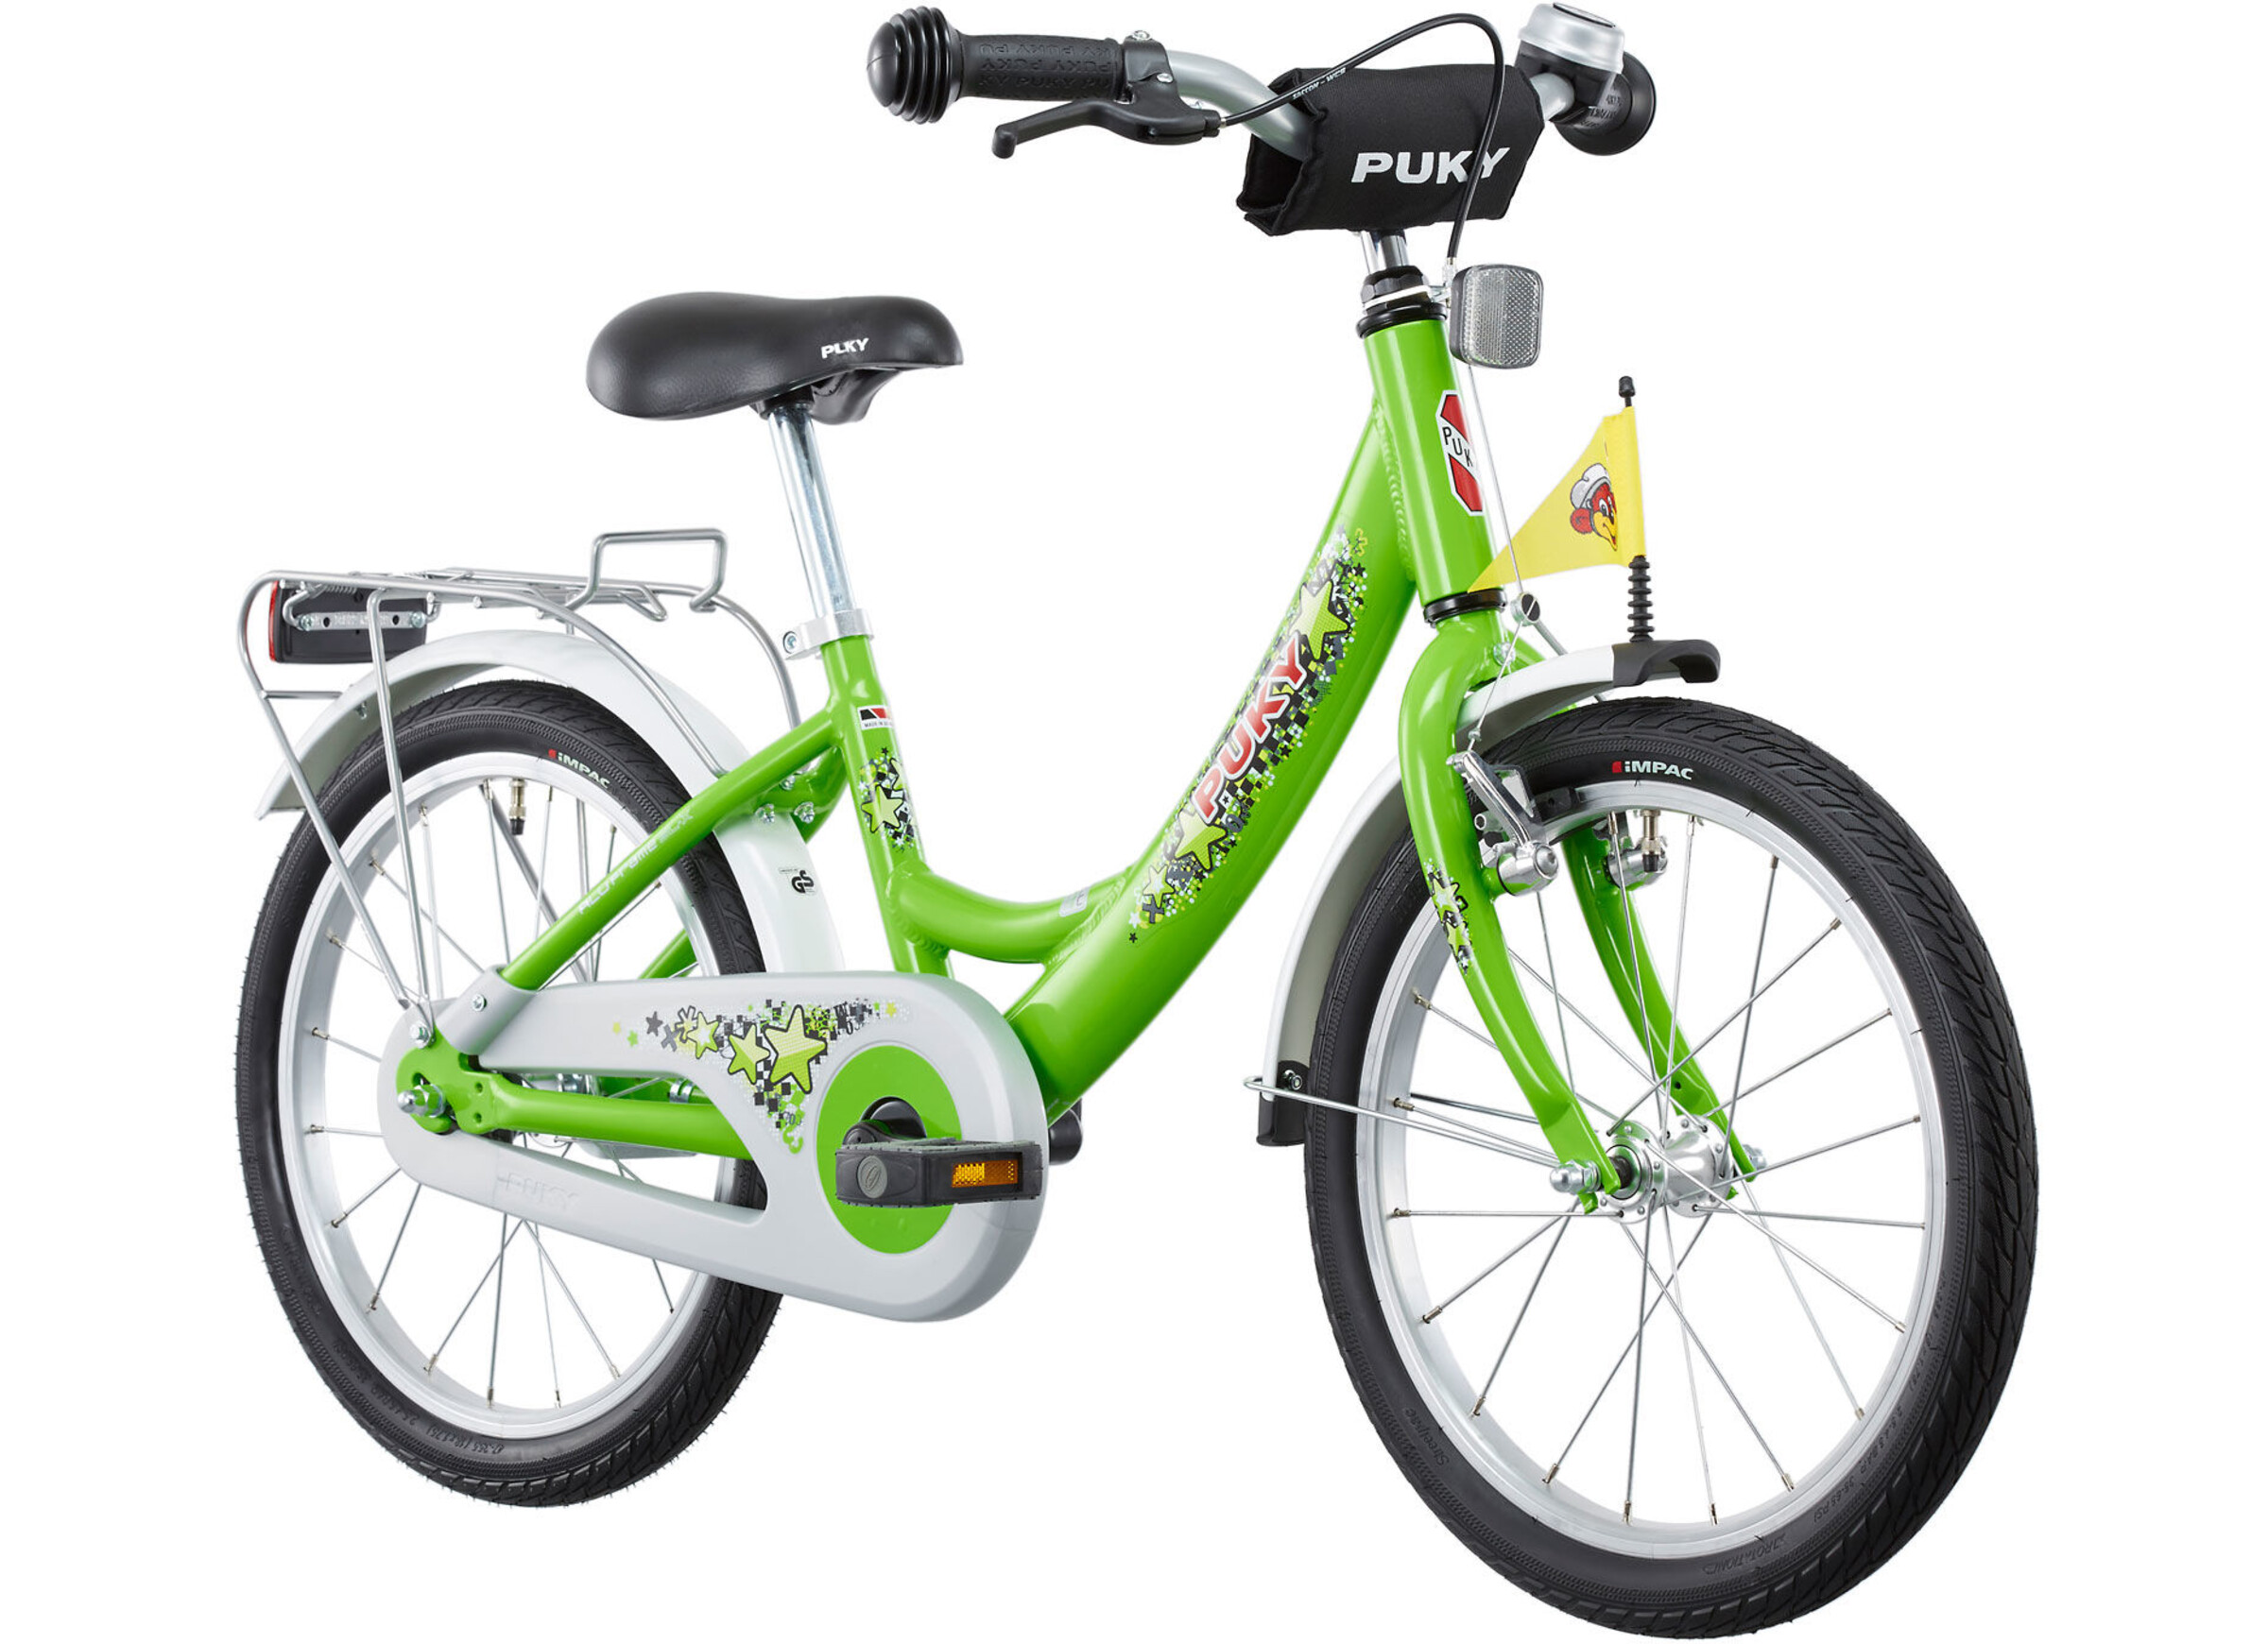 Puky ZL 181 Fahrrad Alu 18 Kinder kiwi günstig kaufen